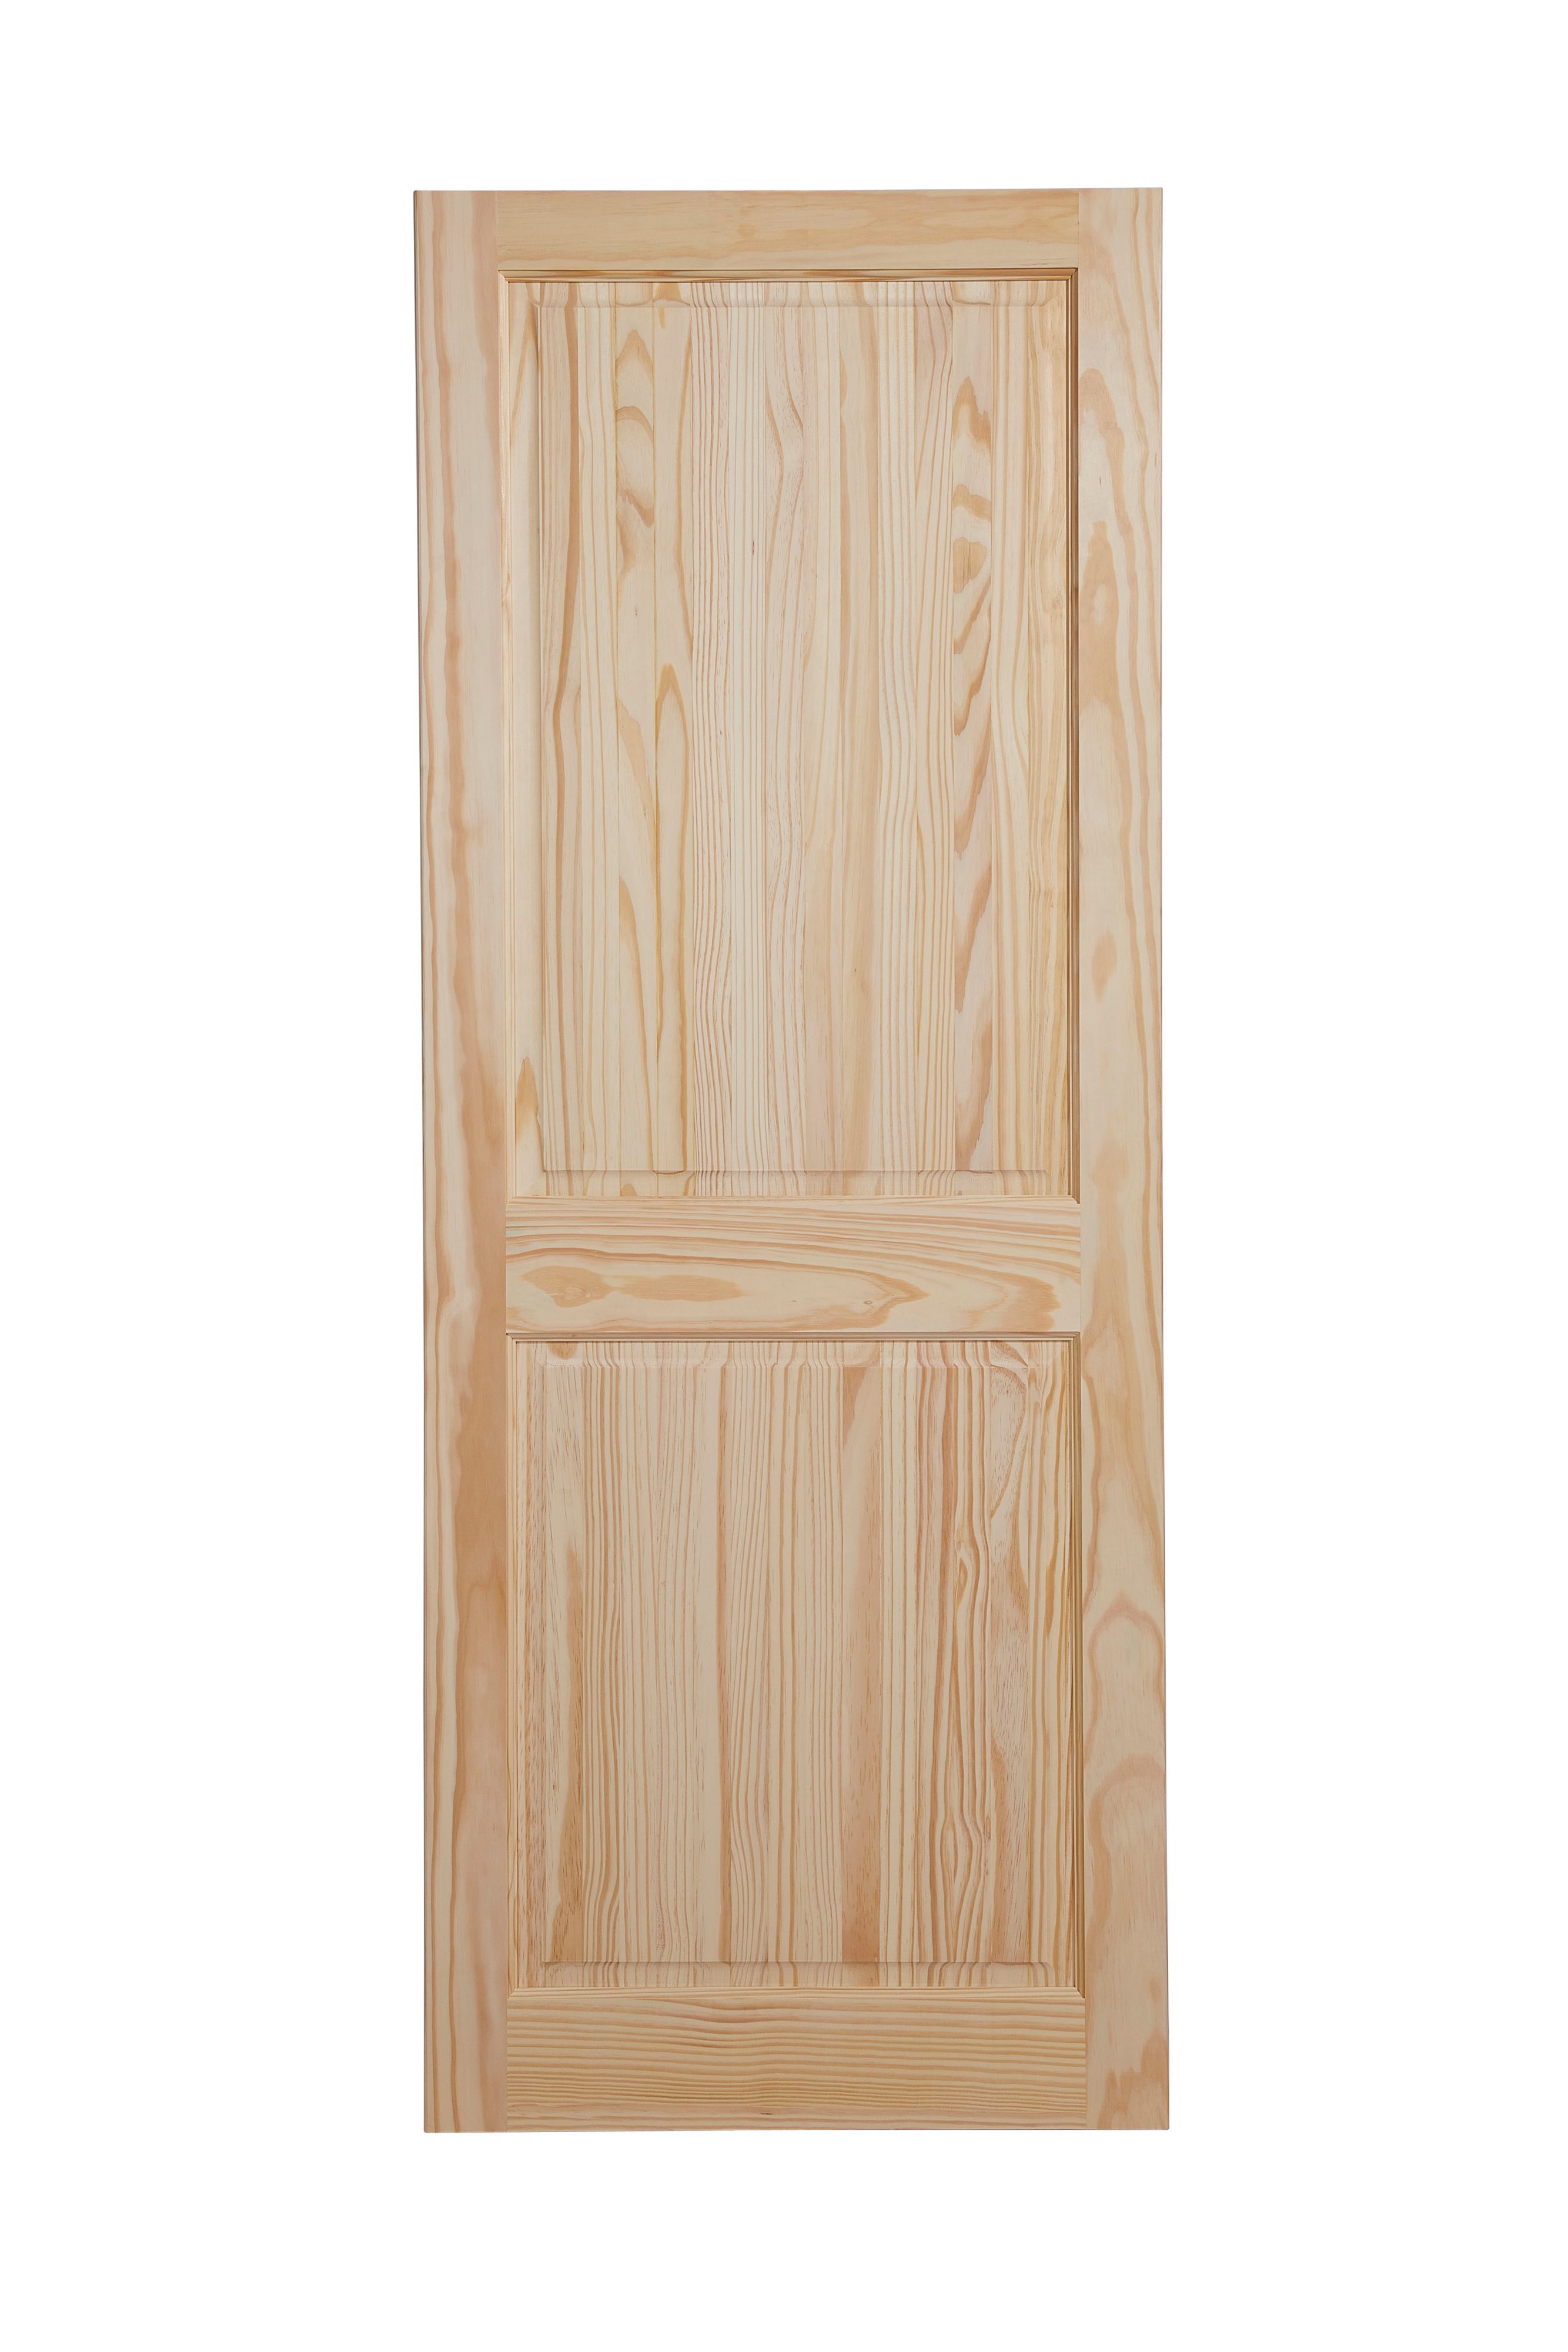 Geom 2 panel Internal Door, (H)1981mm (W)686mm (T)35mm